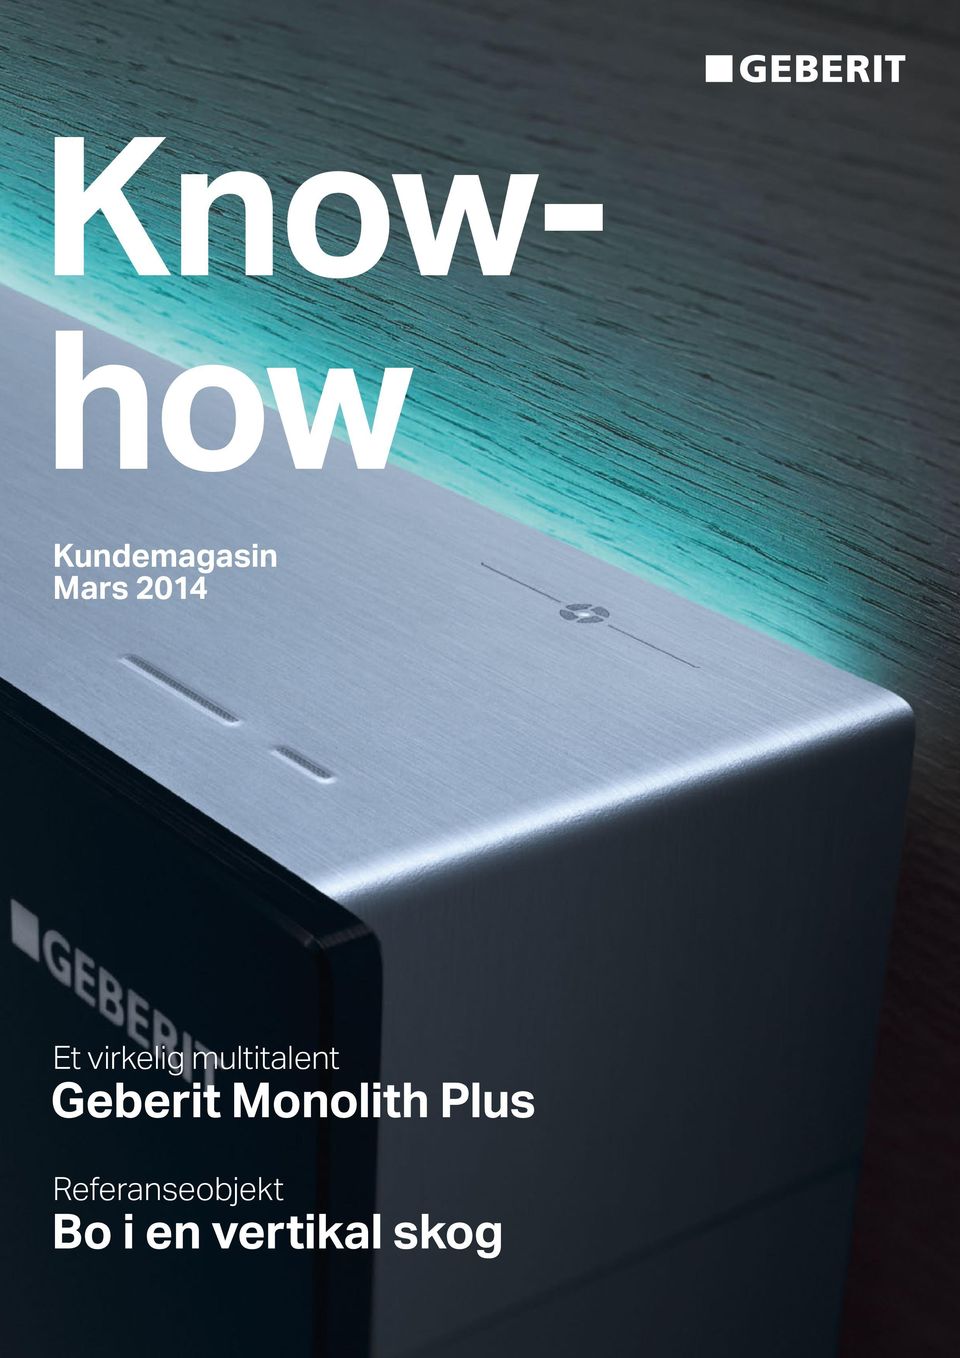 Geberit Monolith Plus